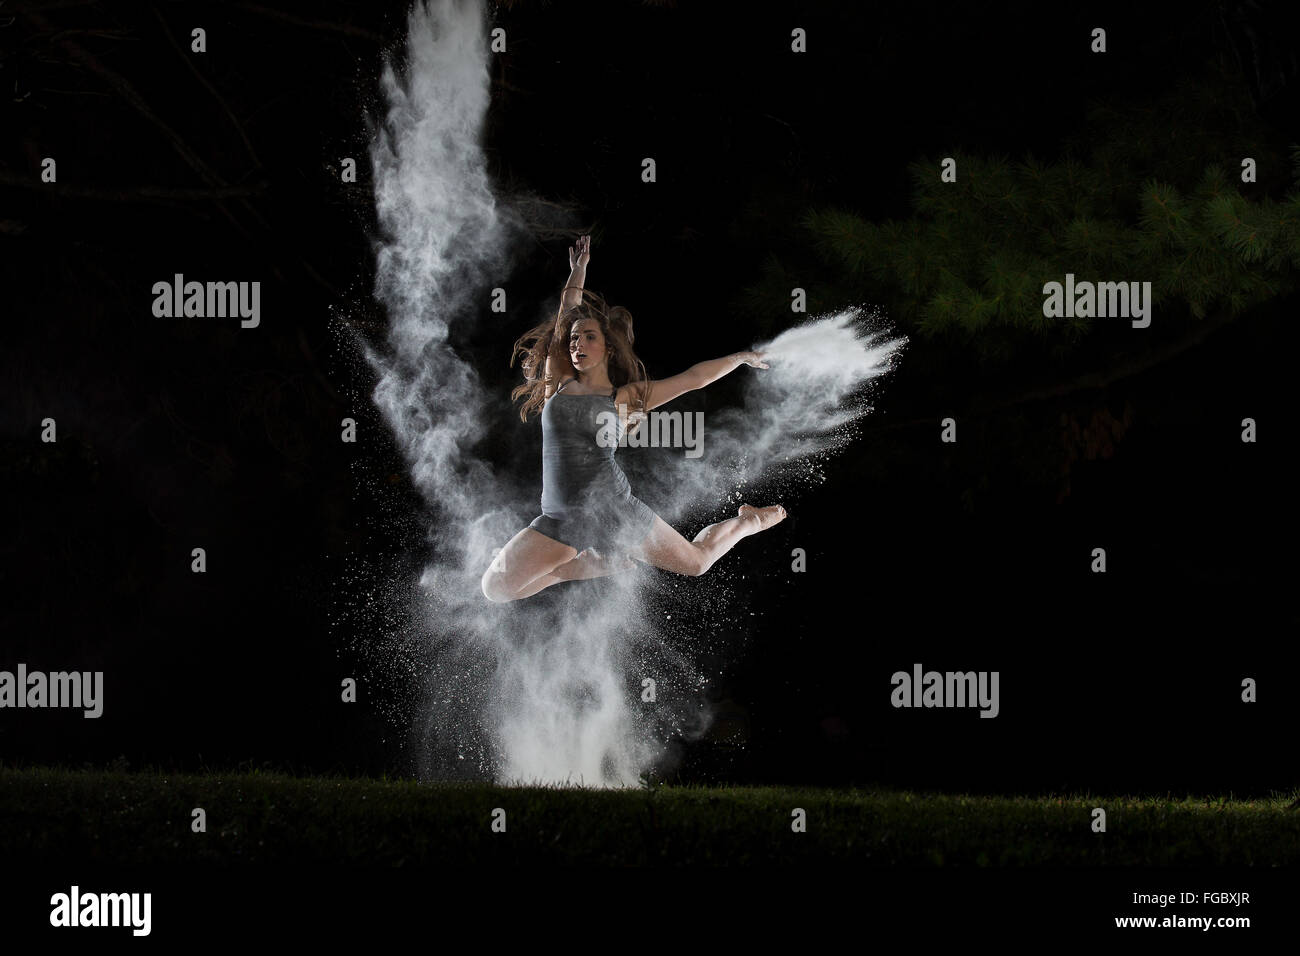 ballet dancer make a leap through a burst of flour Stock Photo